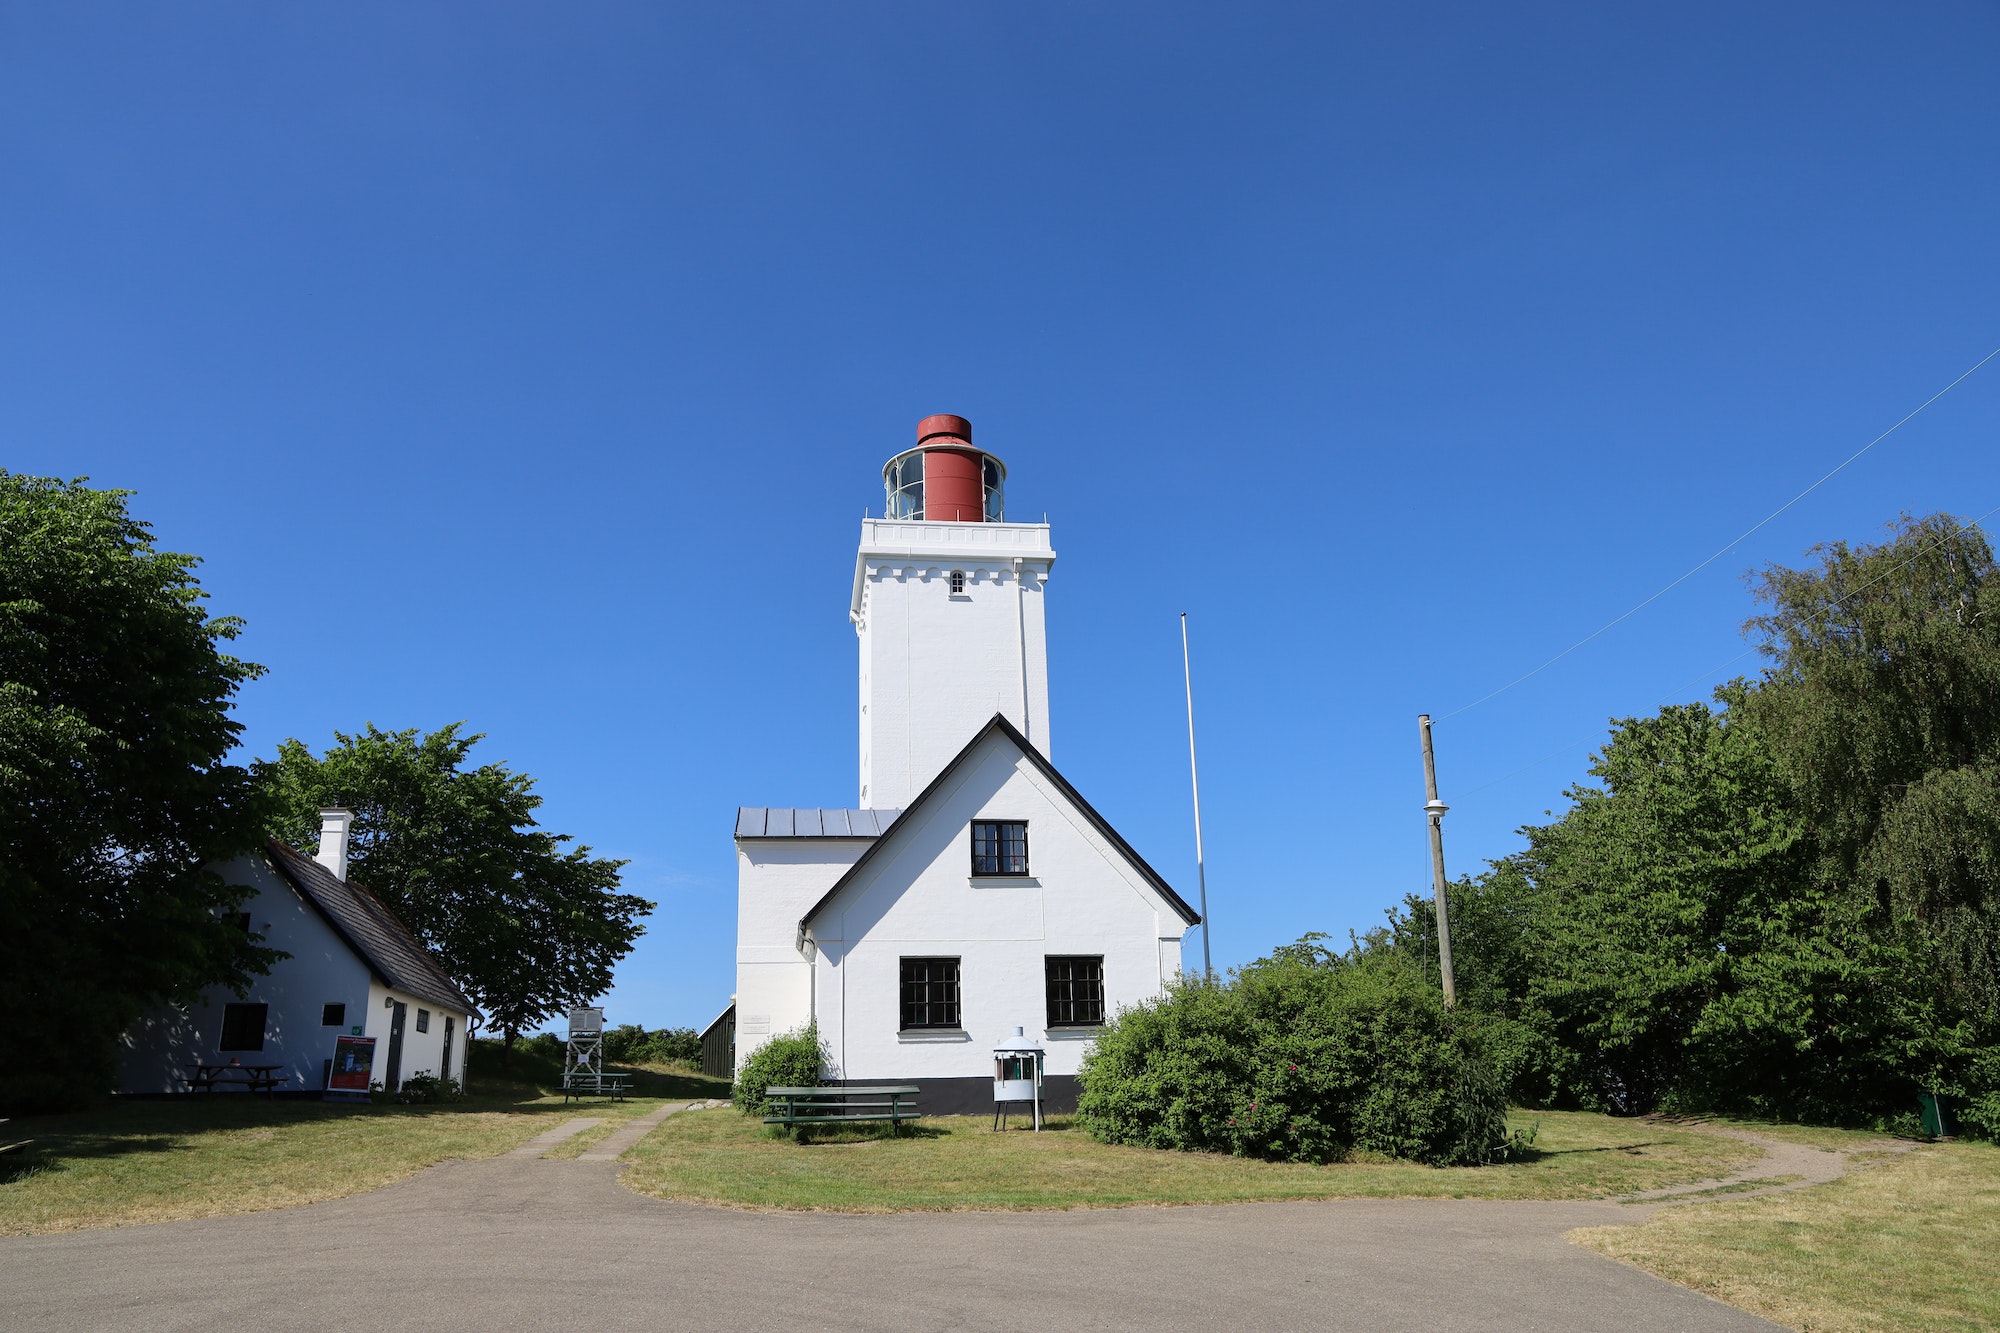 Nakkehoved Lighthouse against the blue sky